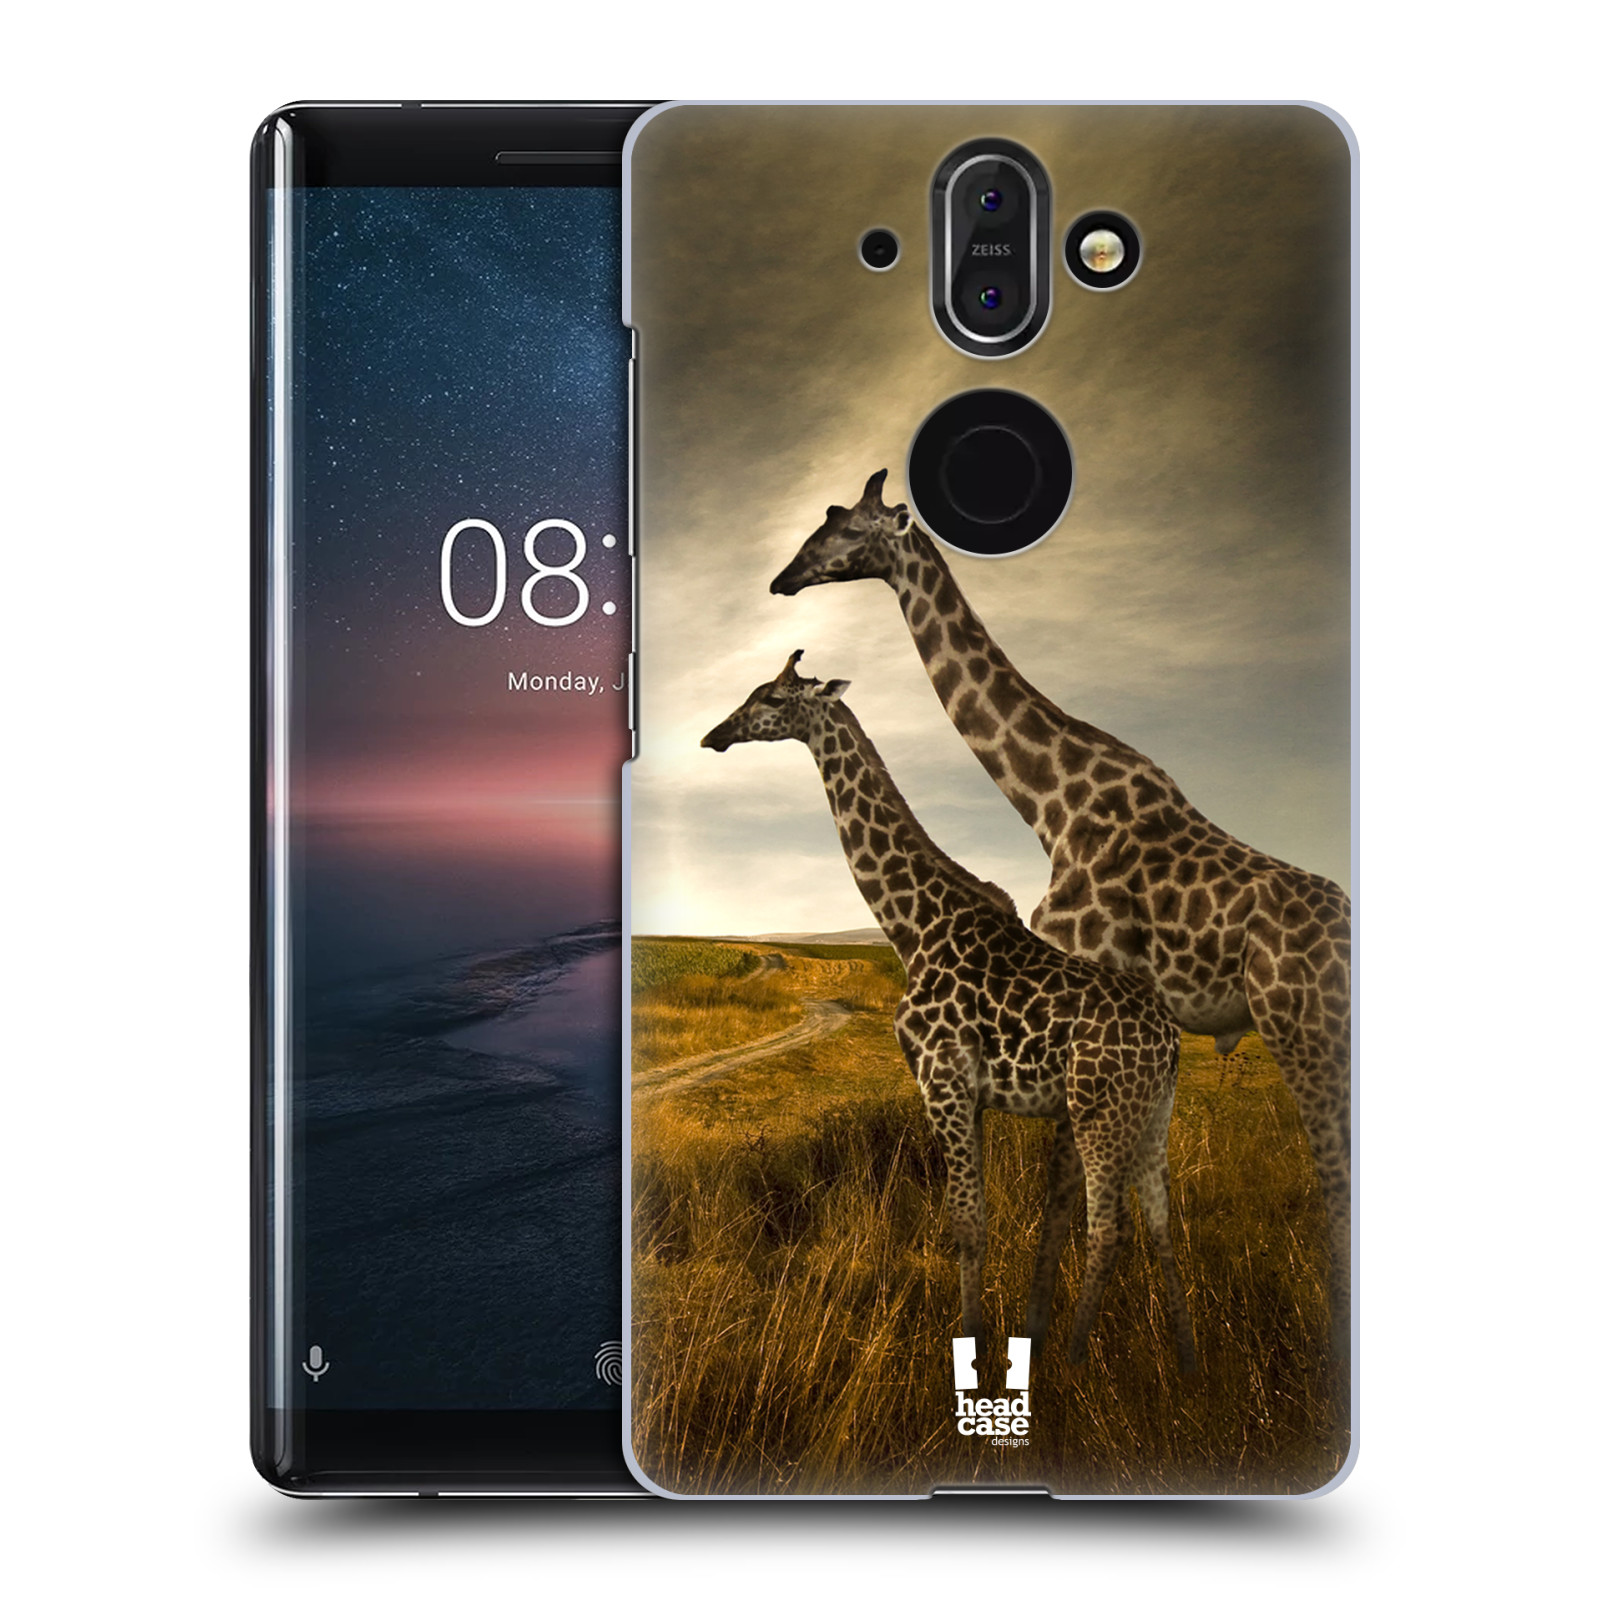 Zadní obal pro mobil Nokia 8 Sirocco - HEAD CASE - Svět zvířat žirafy